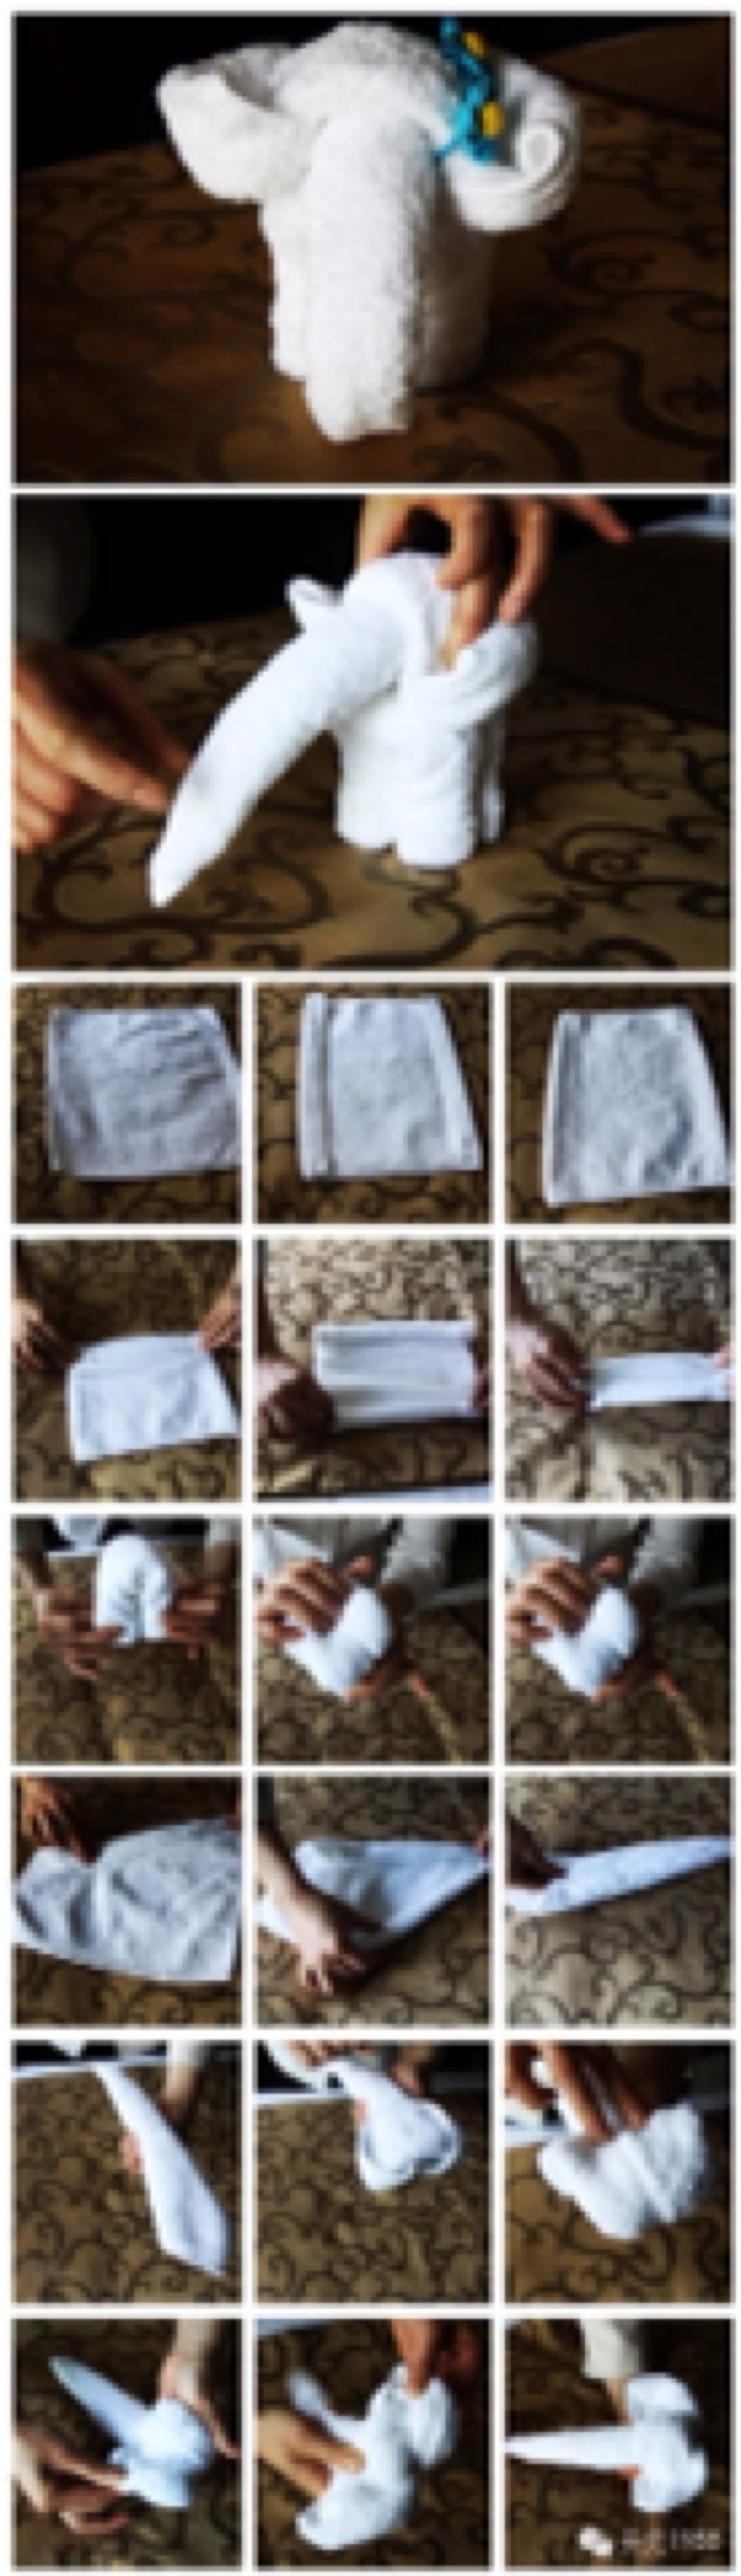 酒店纸巾折叠法图片